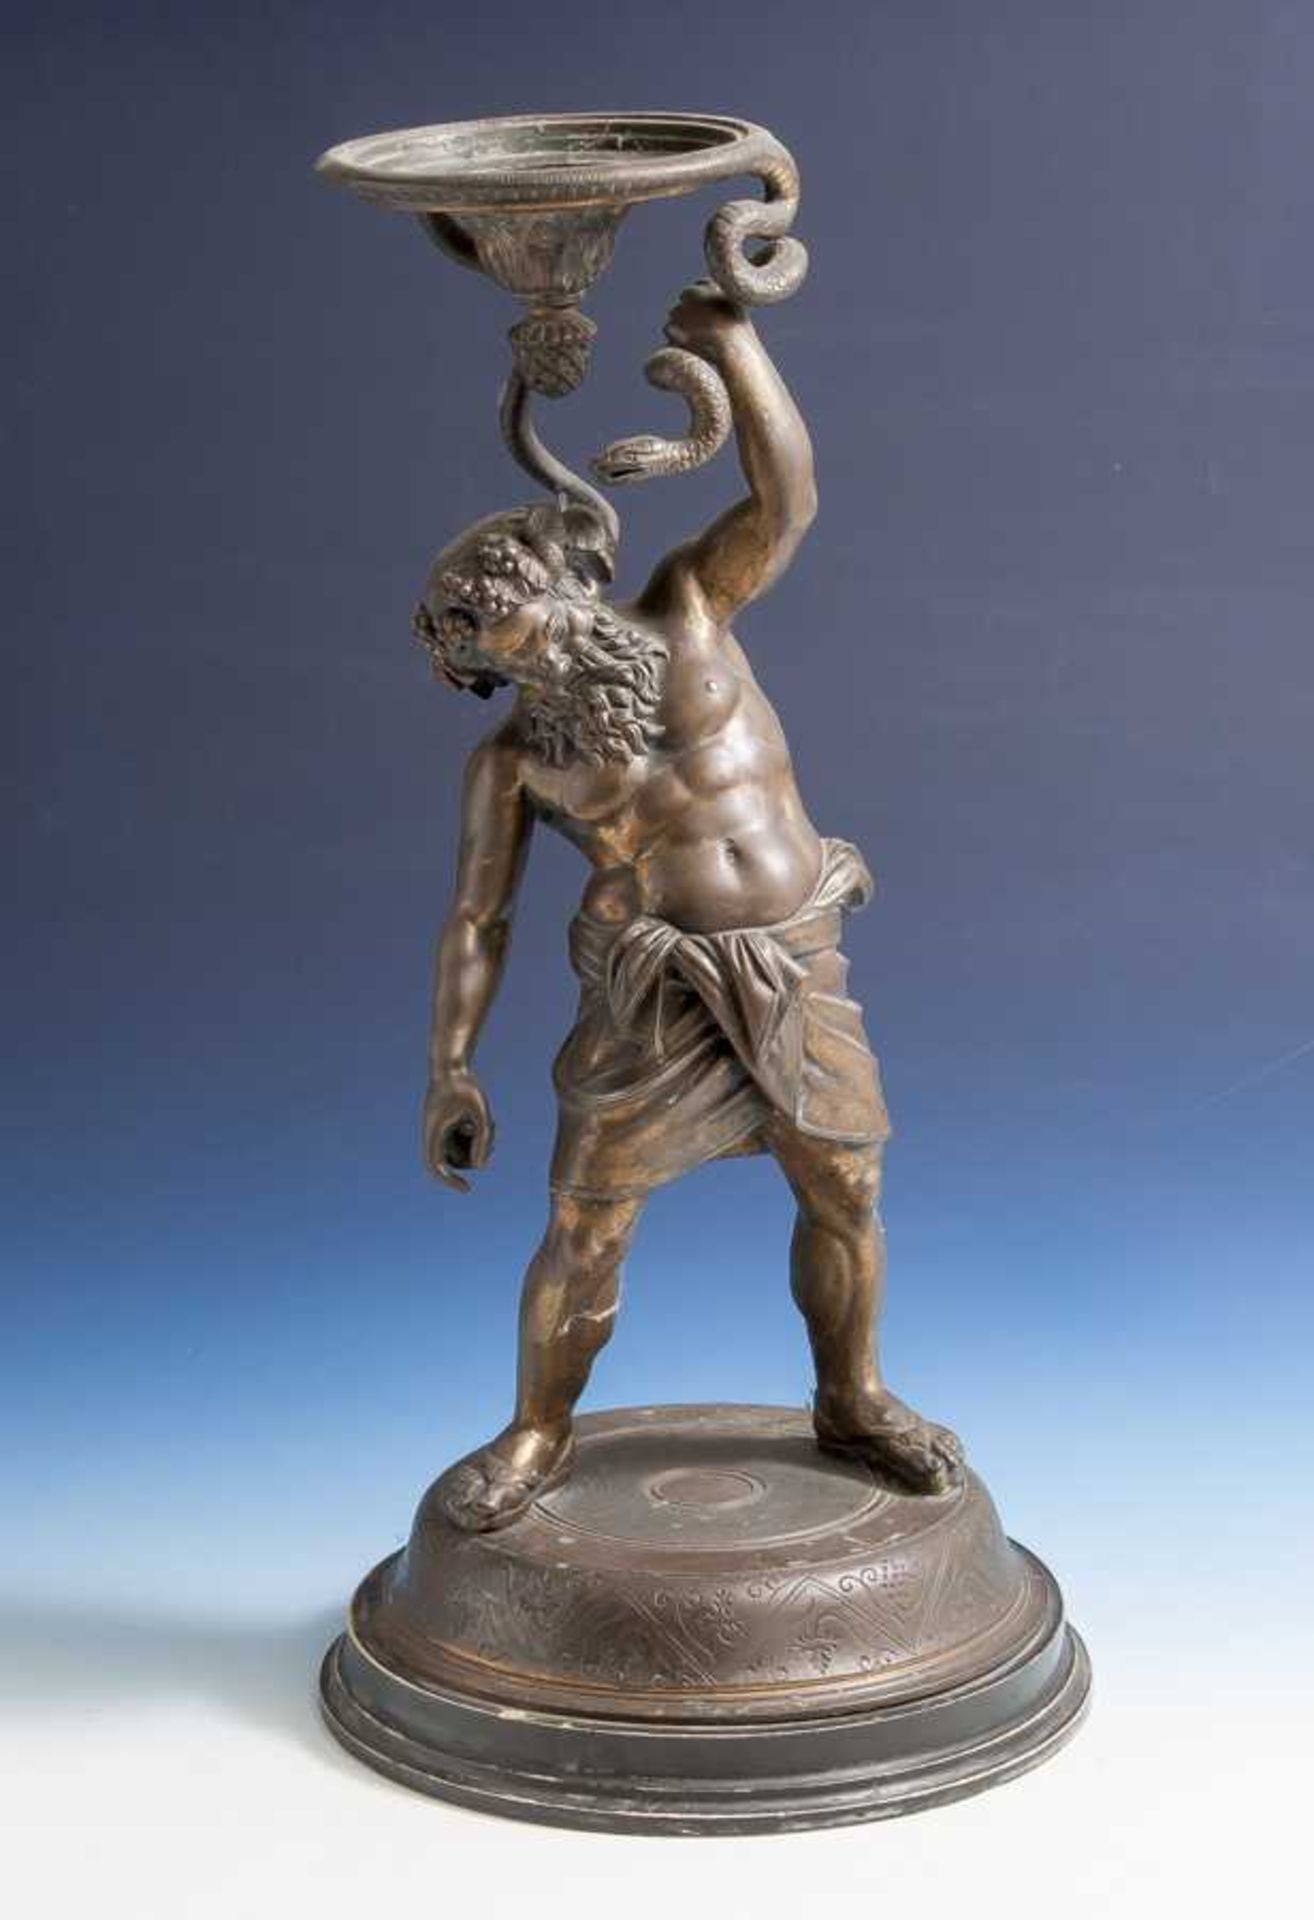 Bacchus mit Schlange, Zinkguss, bronziert, 19. Jahrhundert, wohl Italien, nach antikemVorbild.